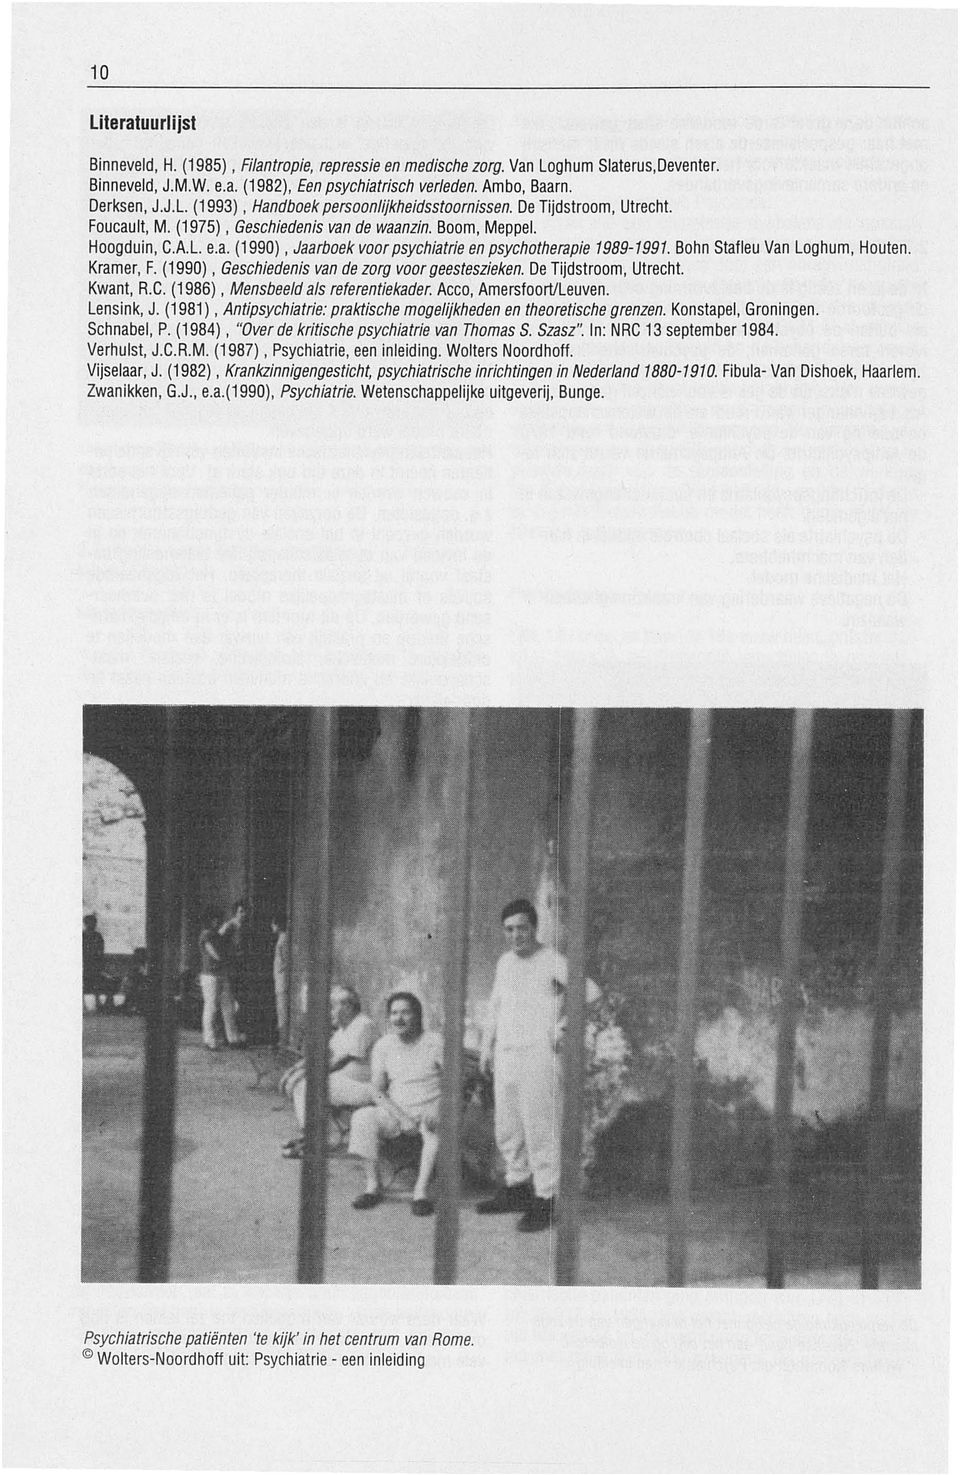 Bohn Stafleu Van Loghum, Houten. Kramer, F. (1990), Geschiedenis van de zorg voor geesteszieken. De Tijdstroom, Utrecht. Kwant, A.C. (1986), Mensbeeld als referentiekader. Acco, Amersfoort/Leuven.